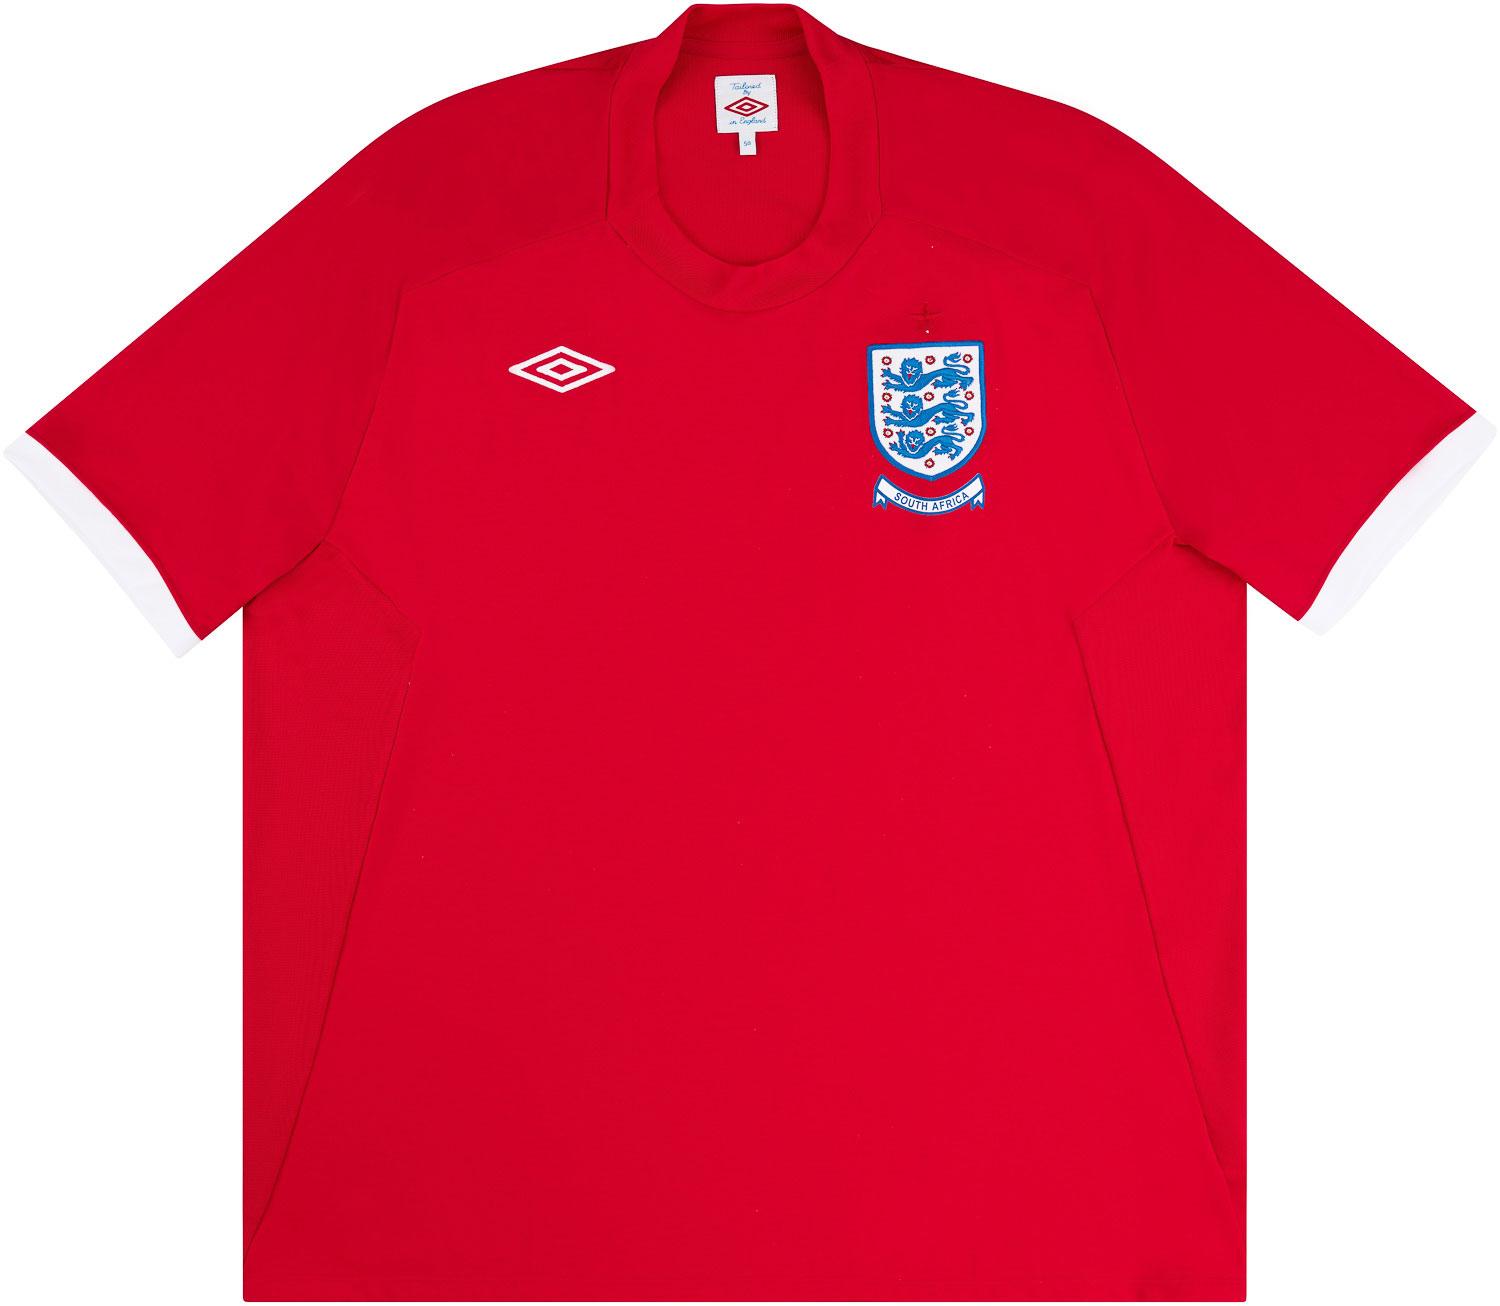 2010-11 England 'South Africa' Away Shirt - 8/10 - ()